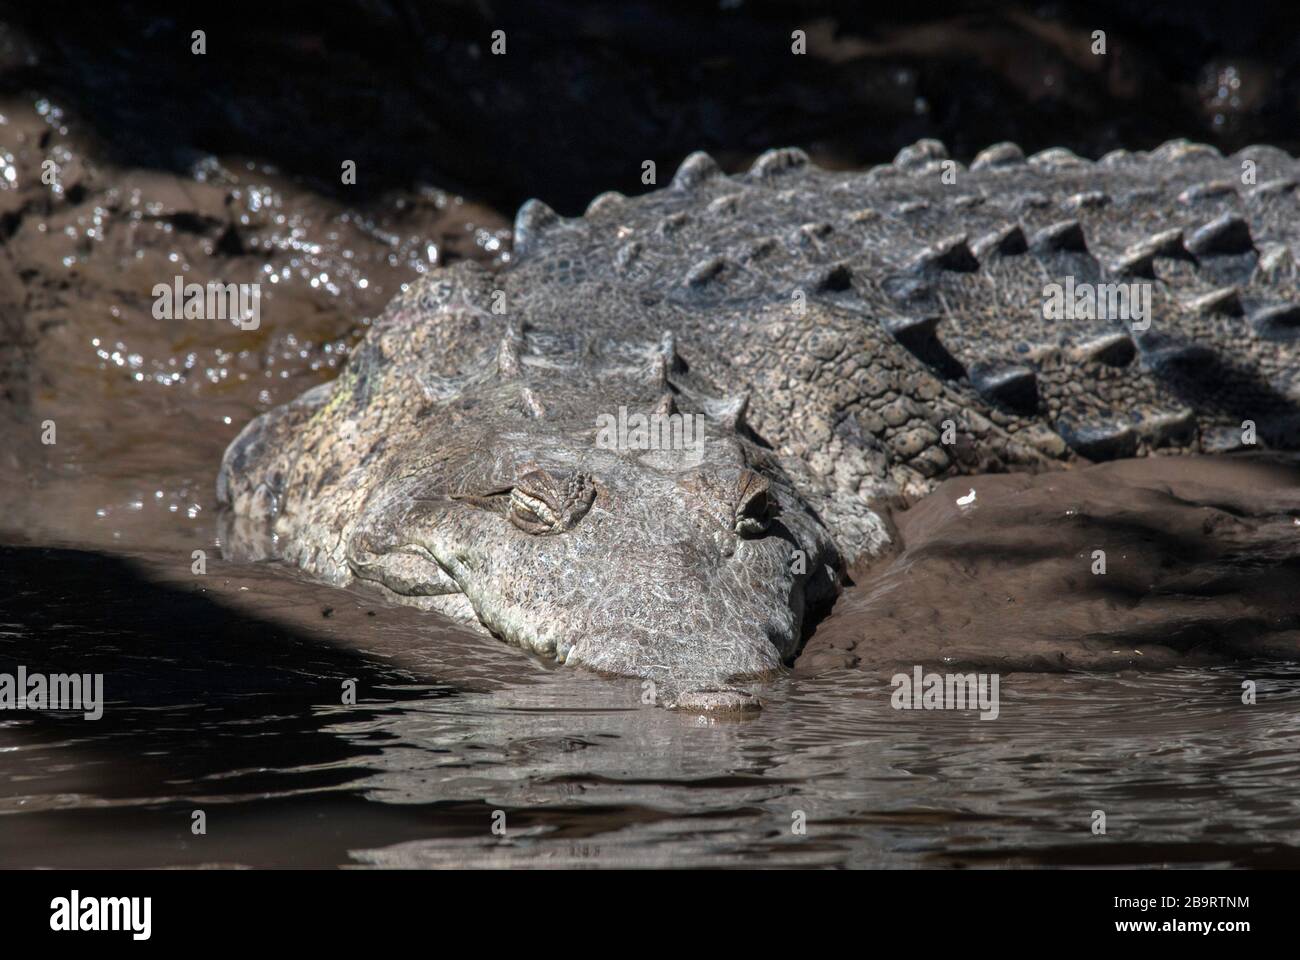 Ein amerikanisches Krokodil wartet im Schlamm an einem Flussufer. Tempisque River, Palo Verde National Park, Costa Rica Stockfoto